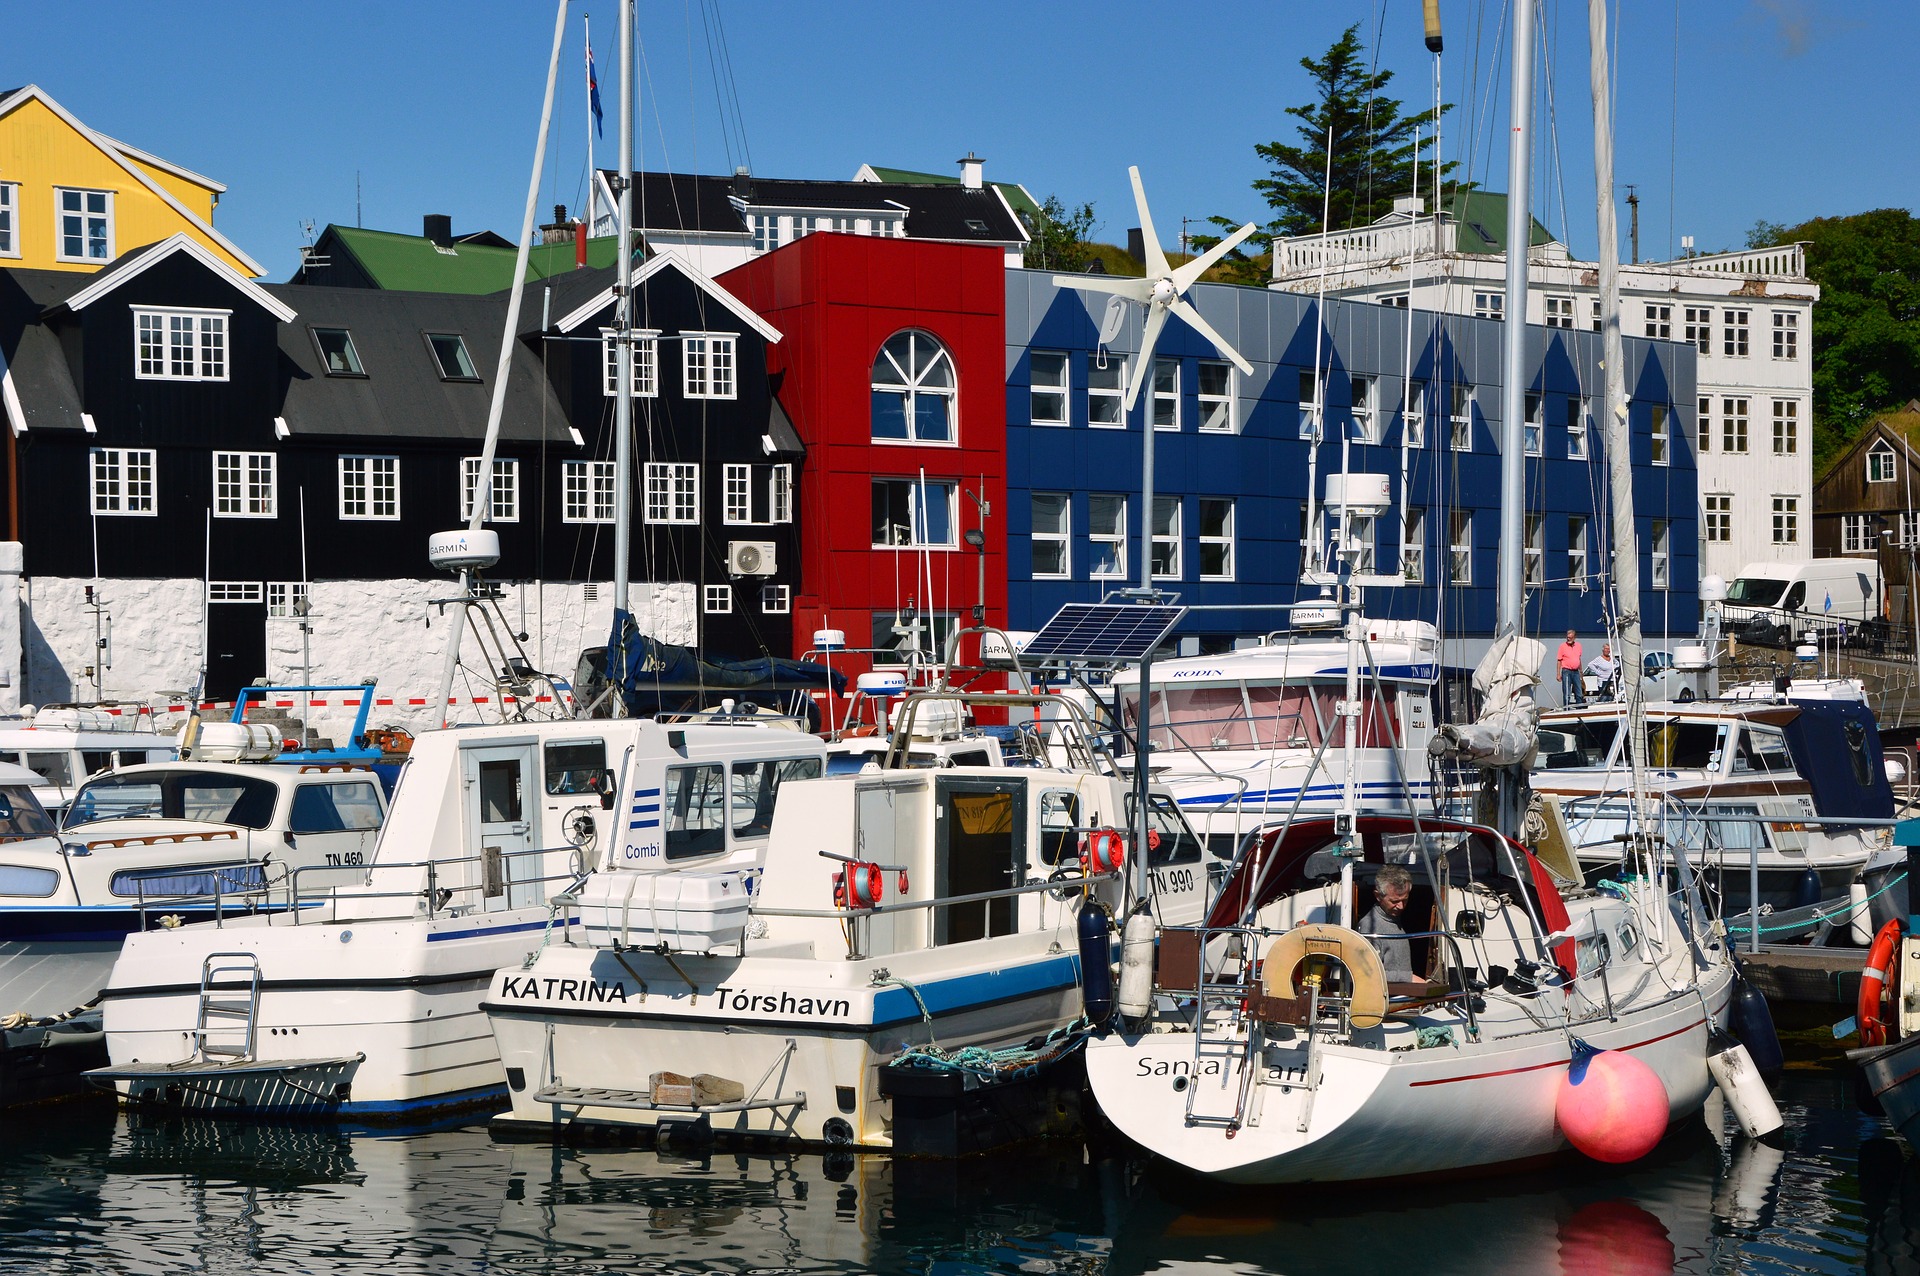 Ijsland-Torshavn-haven-boten-huizen